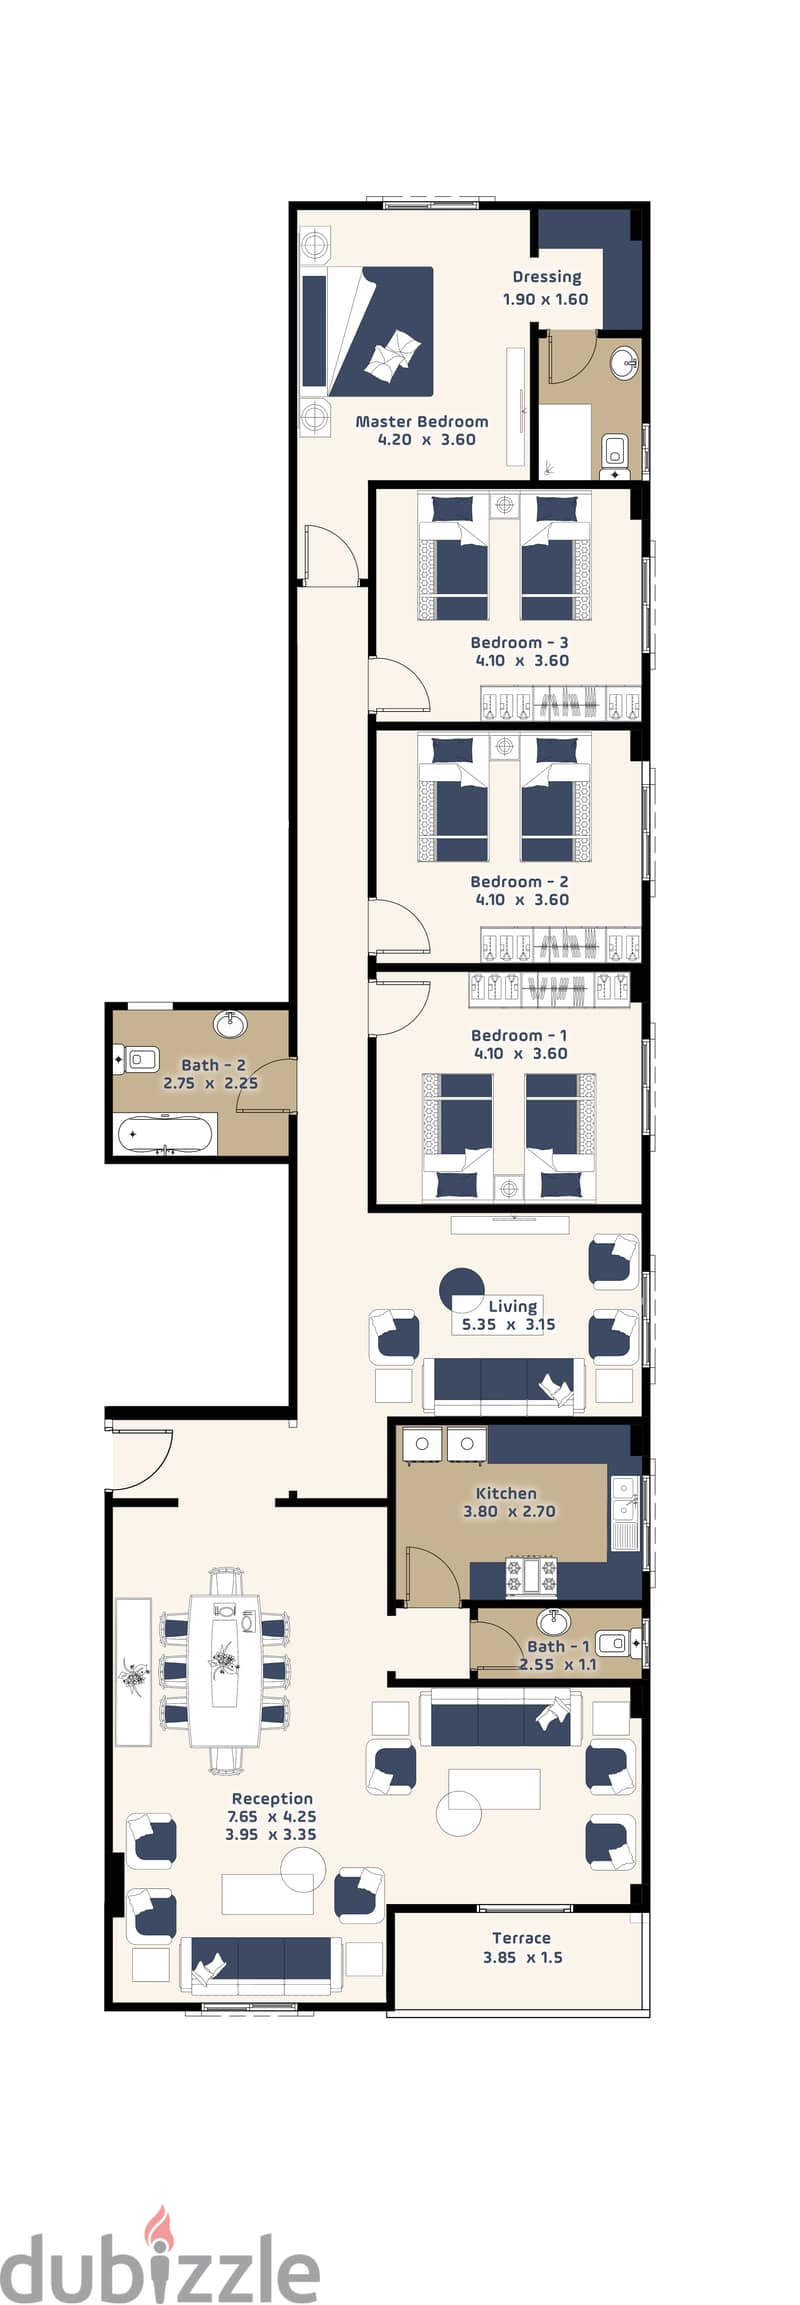 شقة للبيع في التجمع الخامس بيت الوطن الحي الثالث بسعر متر 19.500 لفترة محدودة استلام 2026 بالتقسيط علي 60 شهر 7